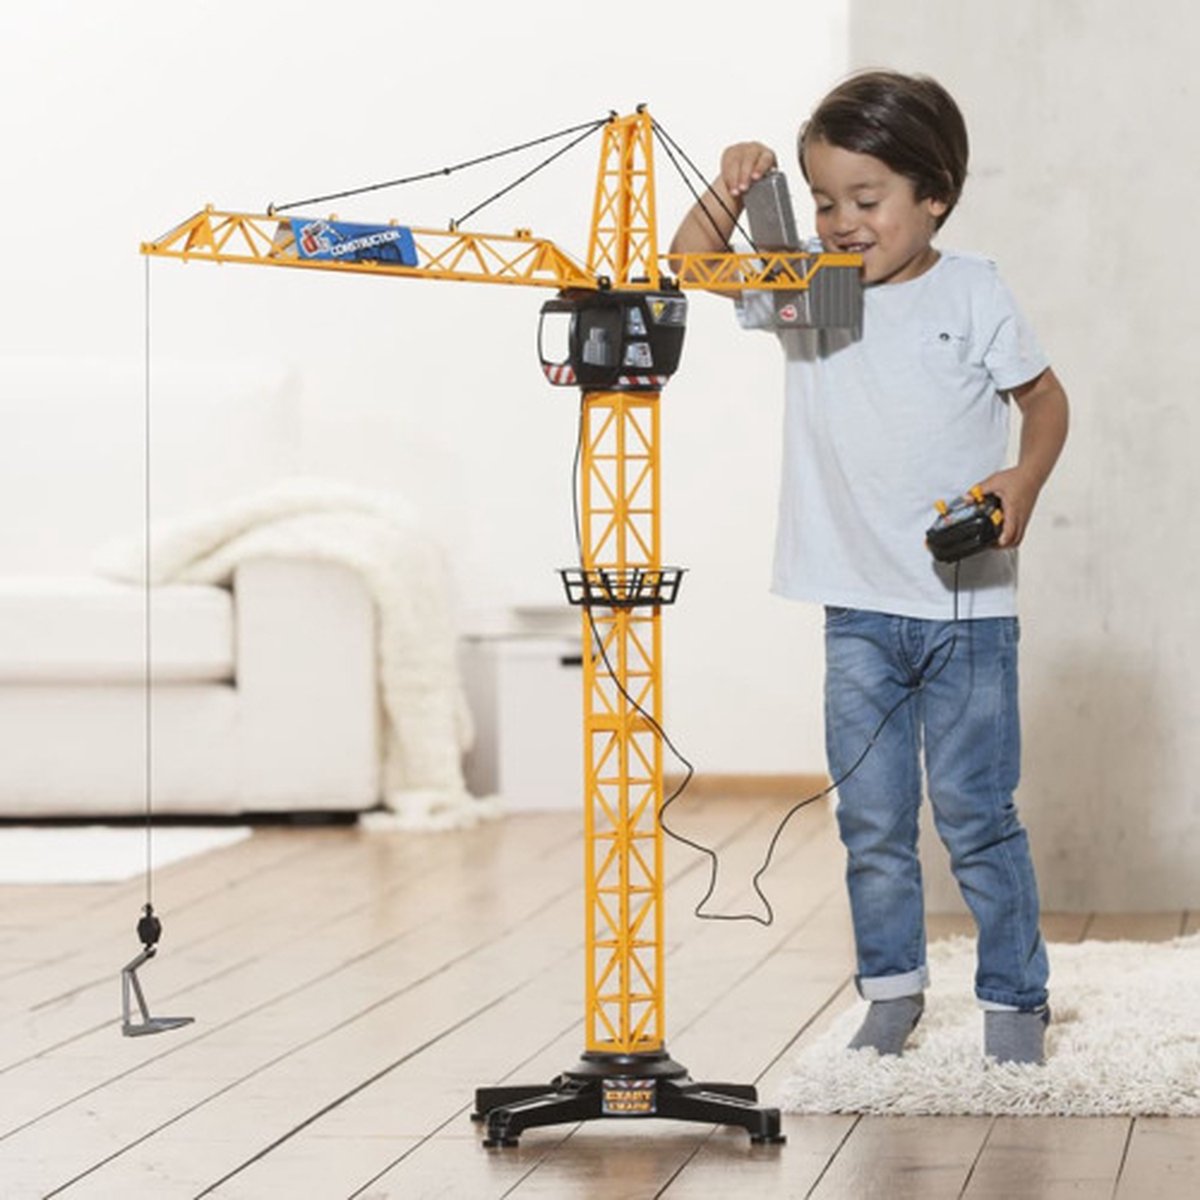 Dickie Toys Giant Crane - Grue électrique télécommandée - pour